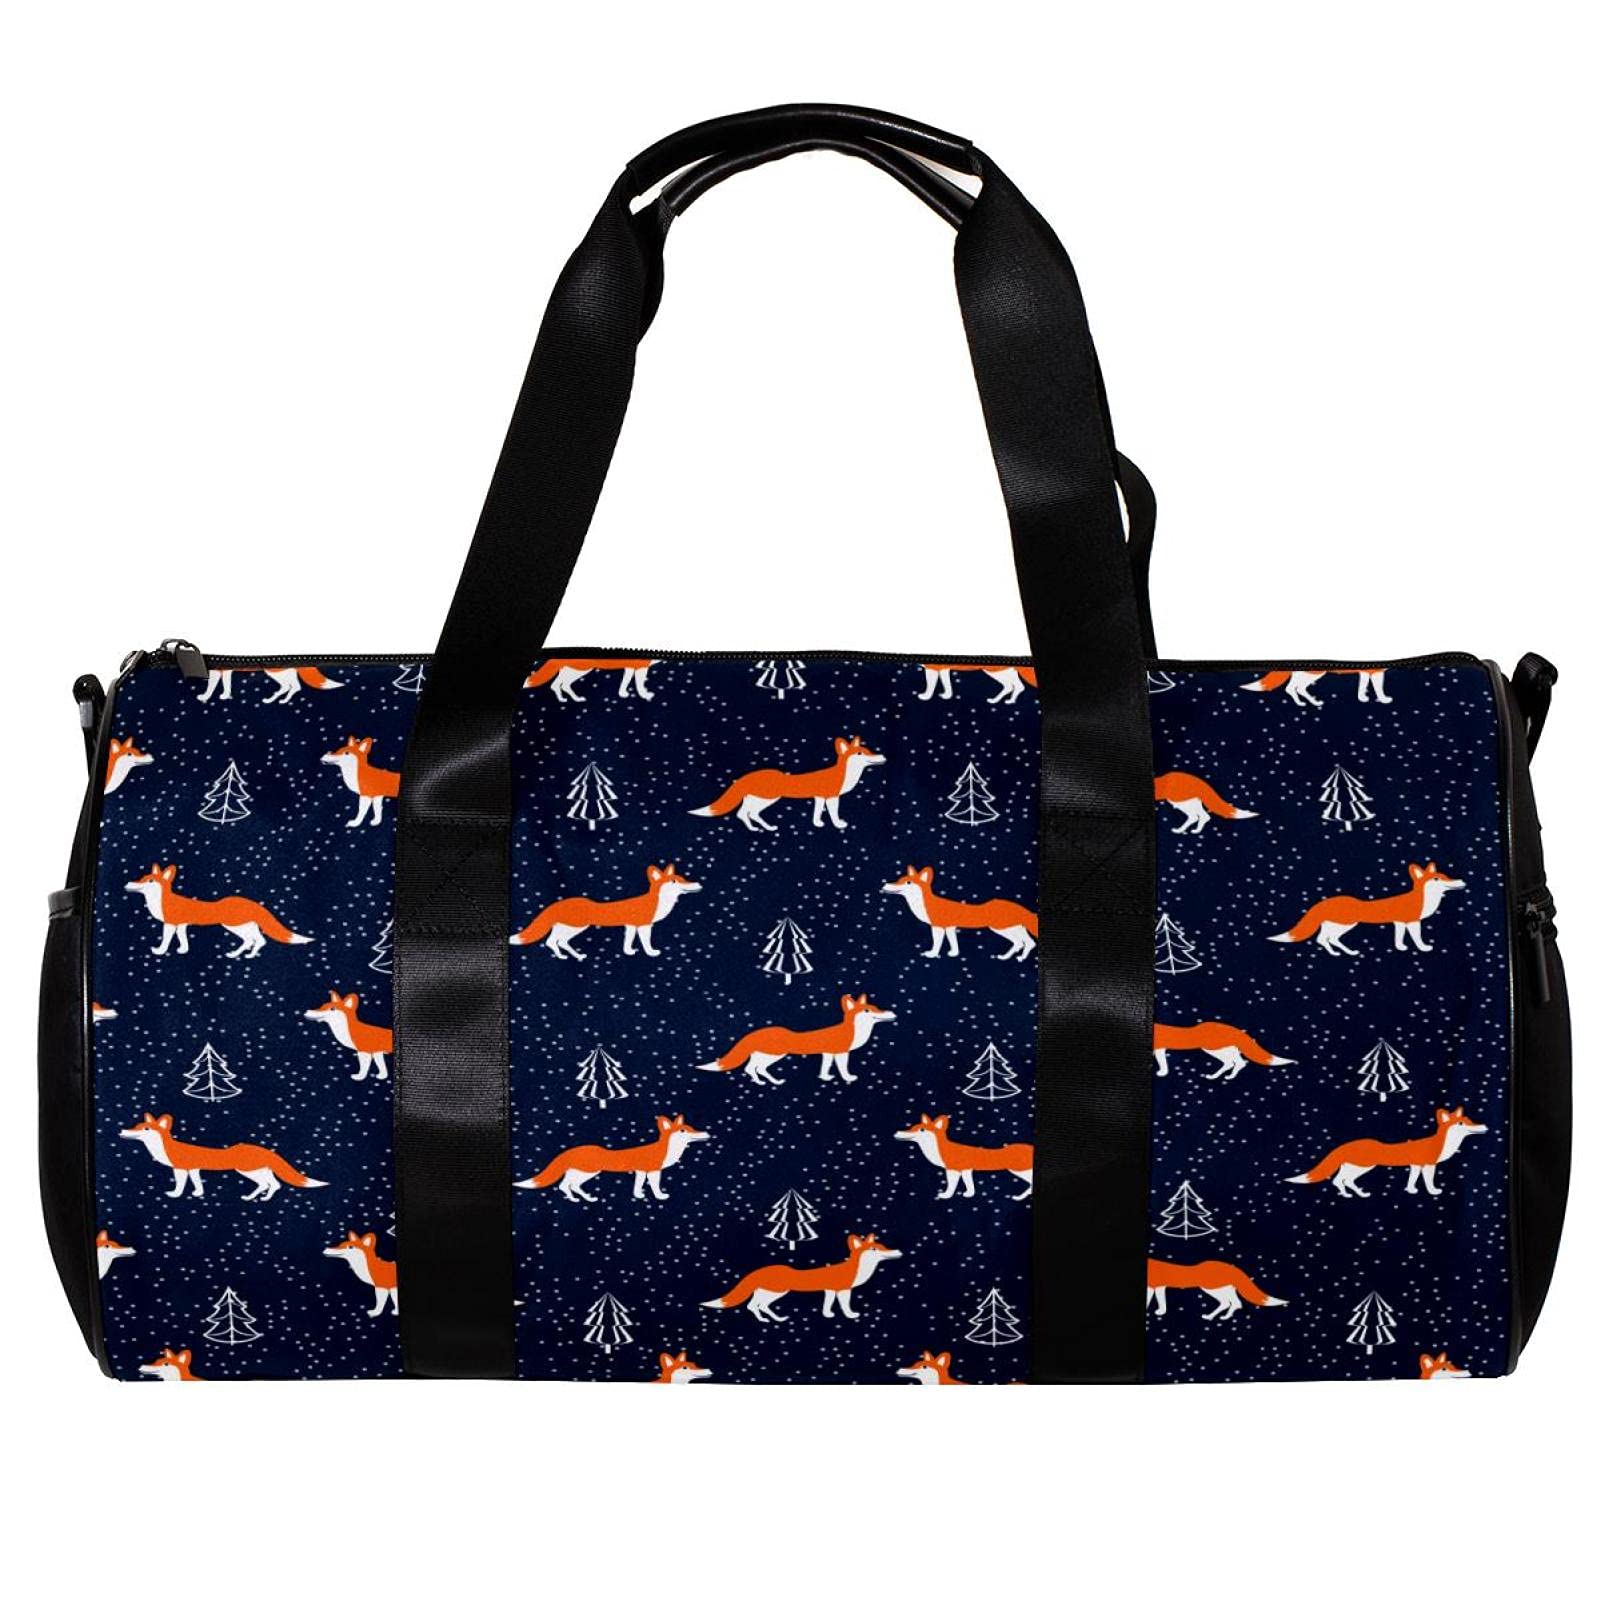 Runde Sporttasche mit abnehmbarem Schultergurt, orangefarbenes Fuchs-Muster, marineblau, Trainings-Handtasche für Damen und Herren